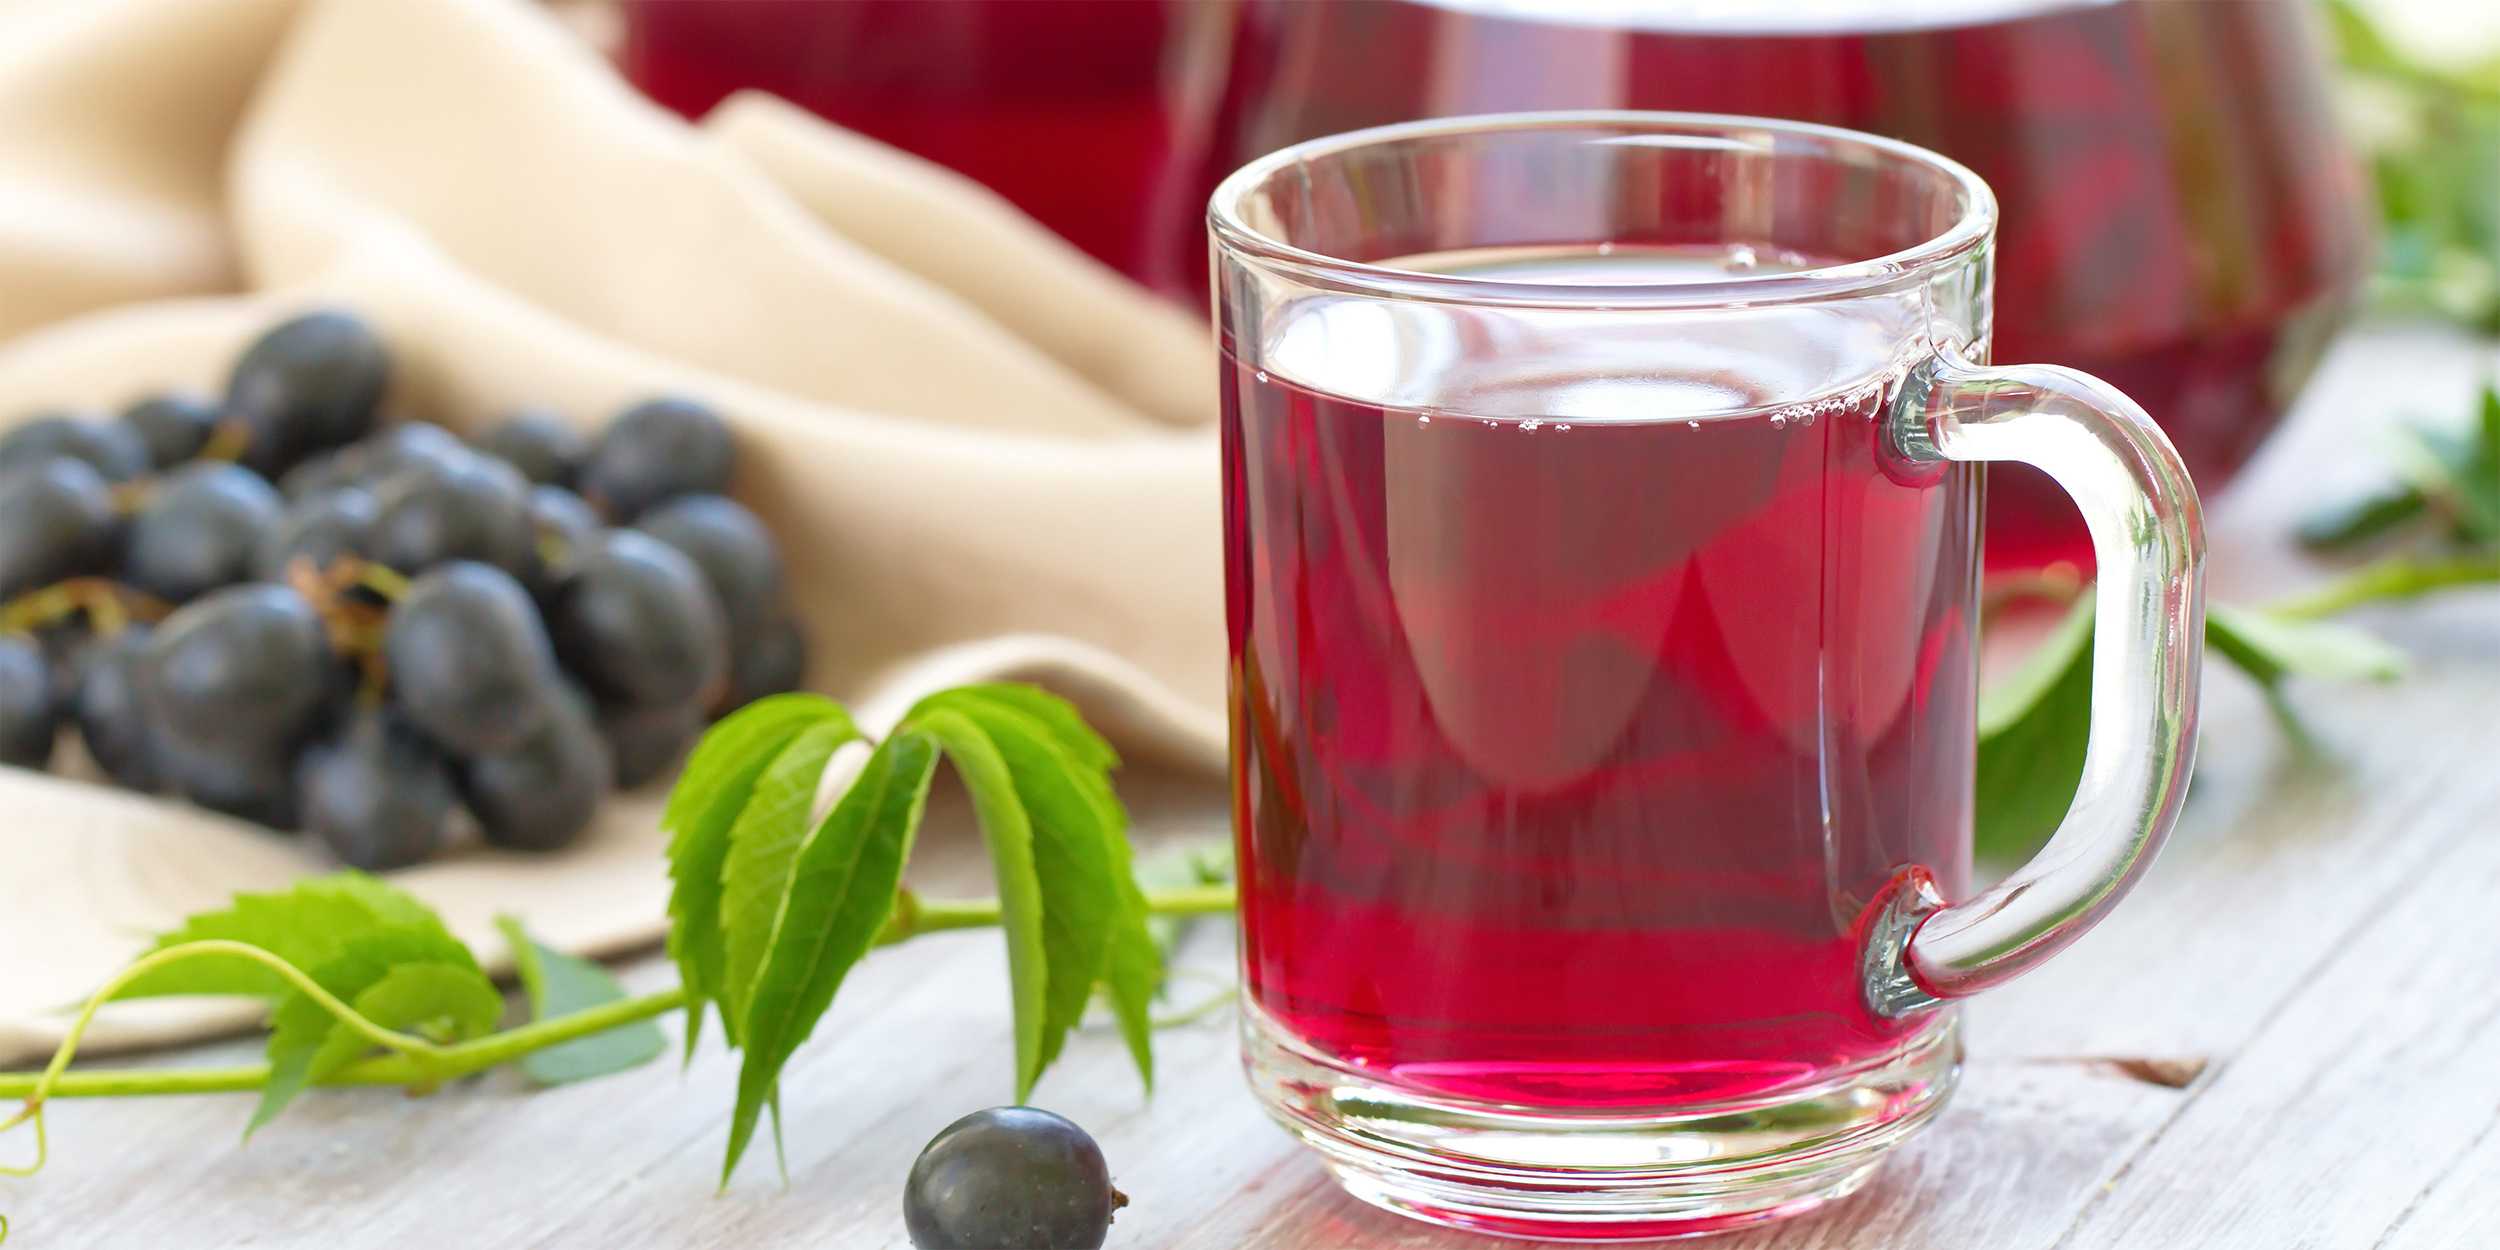 Вкусный компот из винограда на зиму: запасаемся витаминным напитком